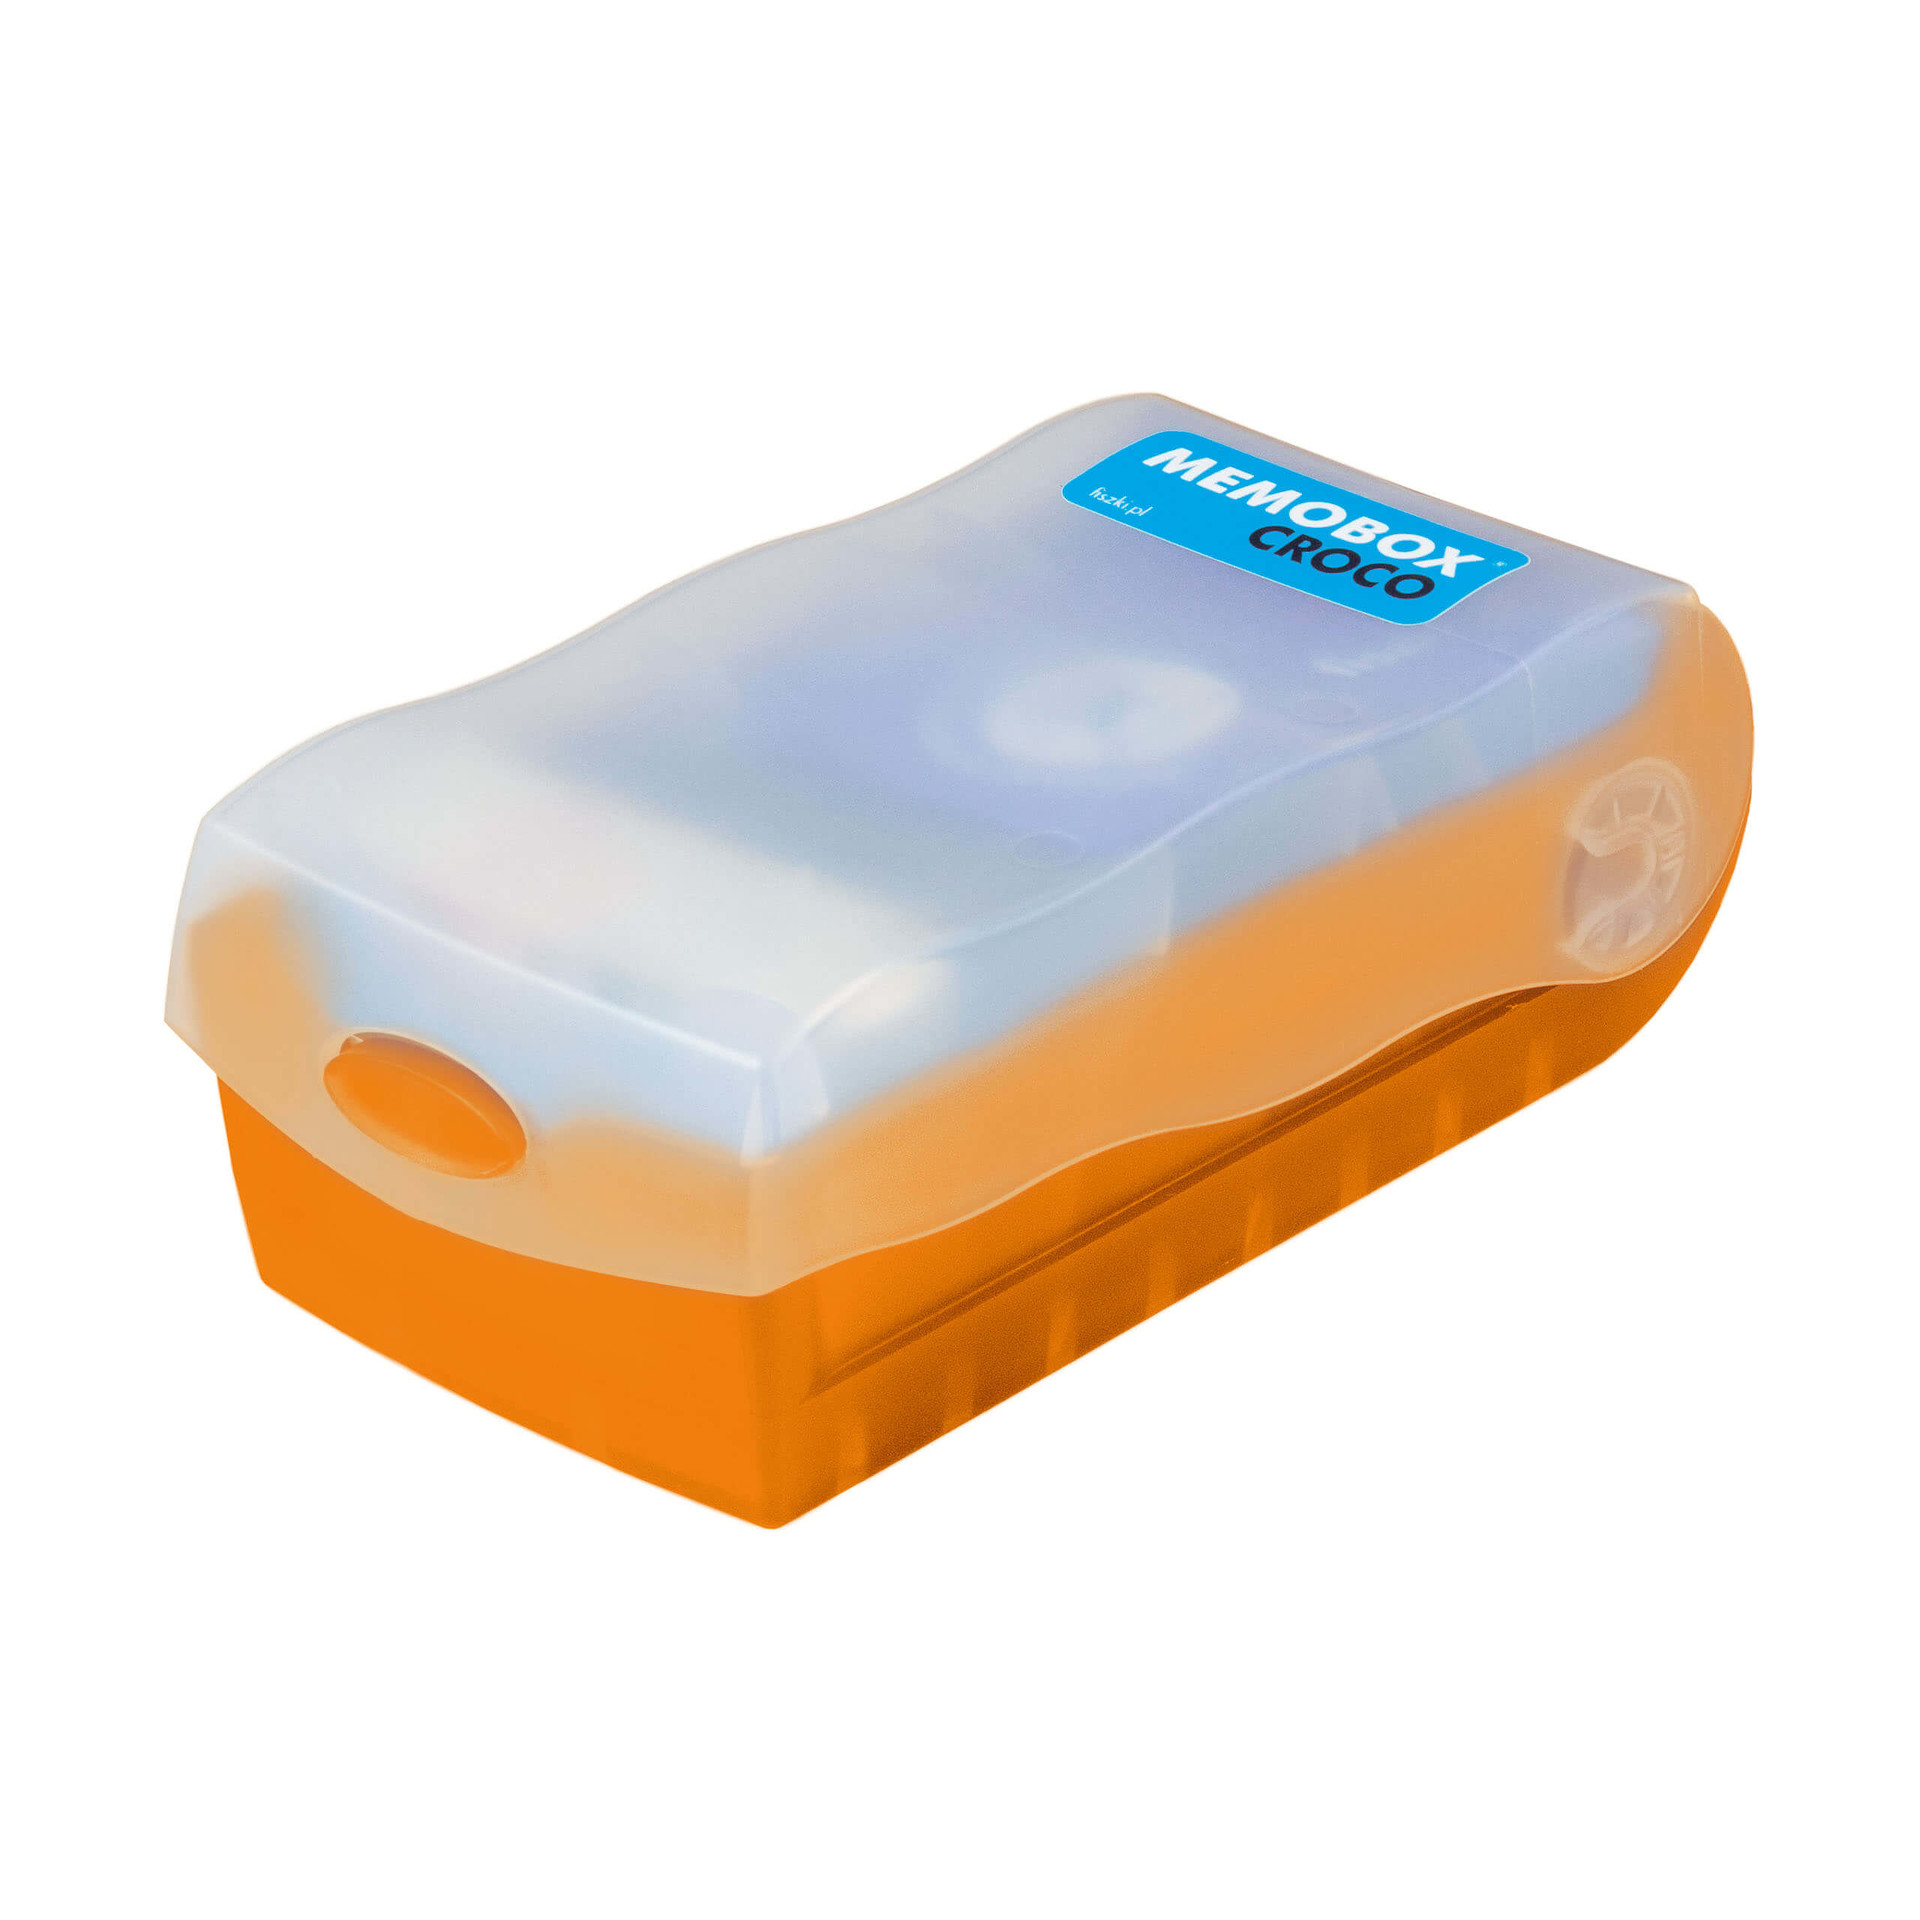 MEMOBOX CROCO - pomarańczowe pudełko do nauki z fiszek